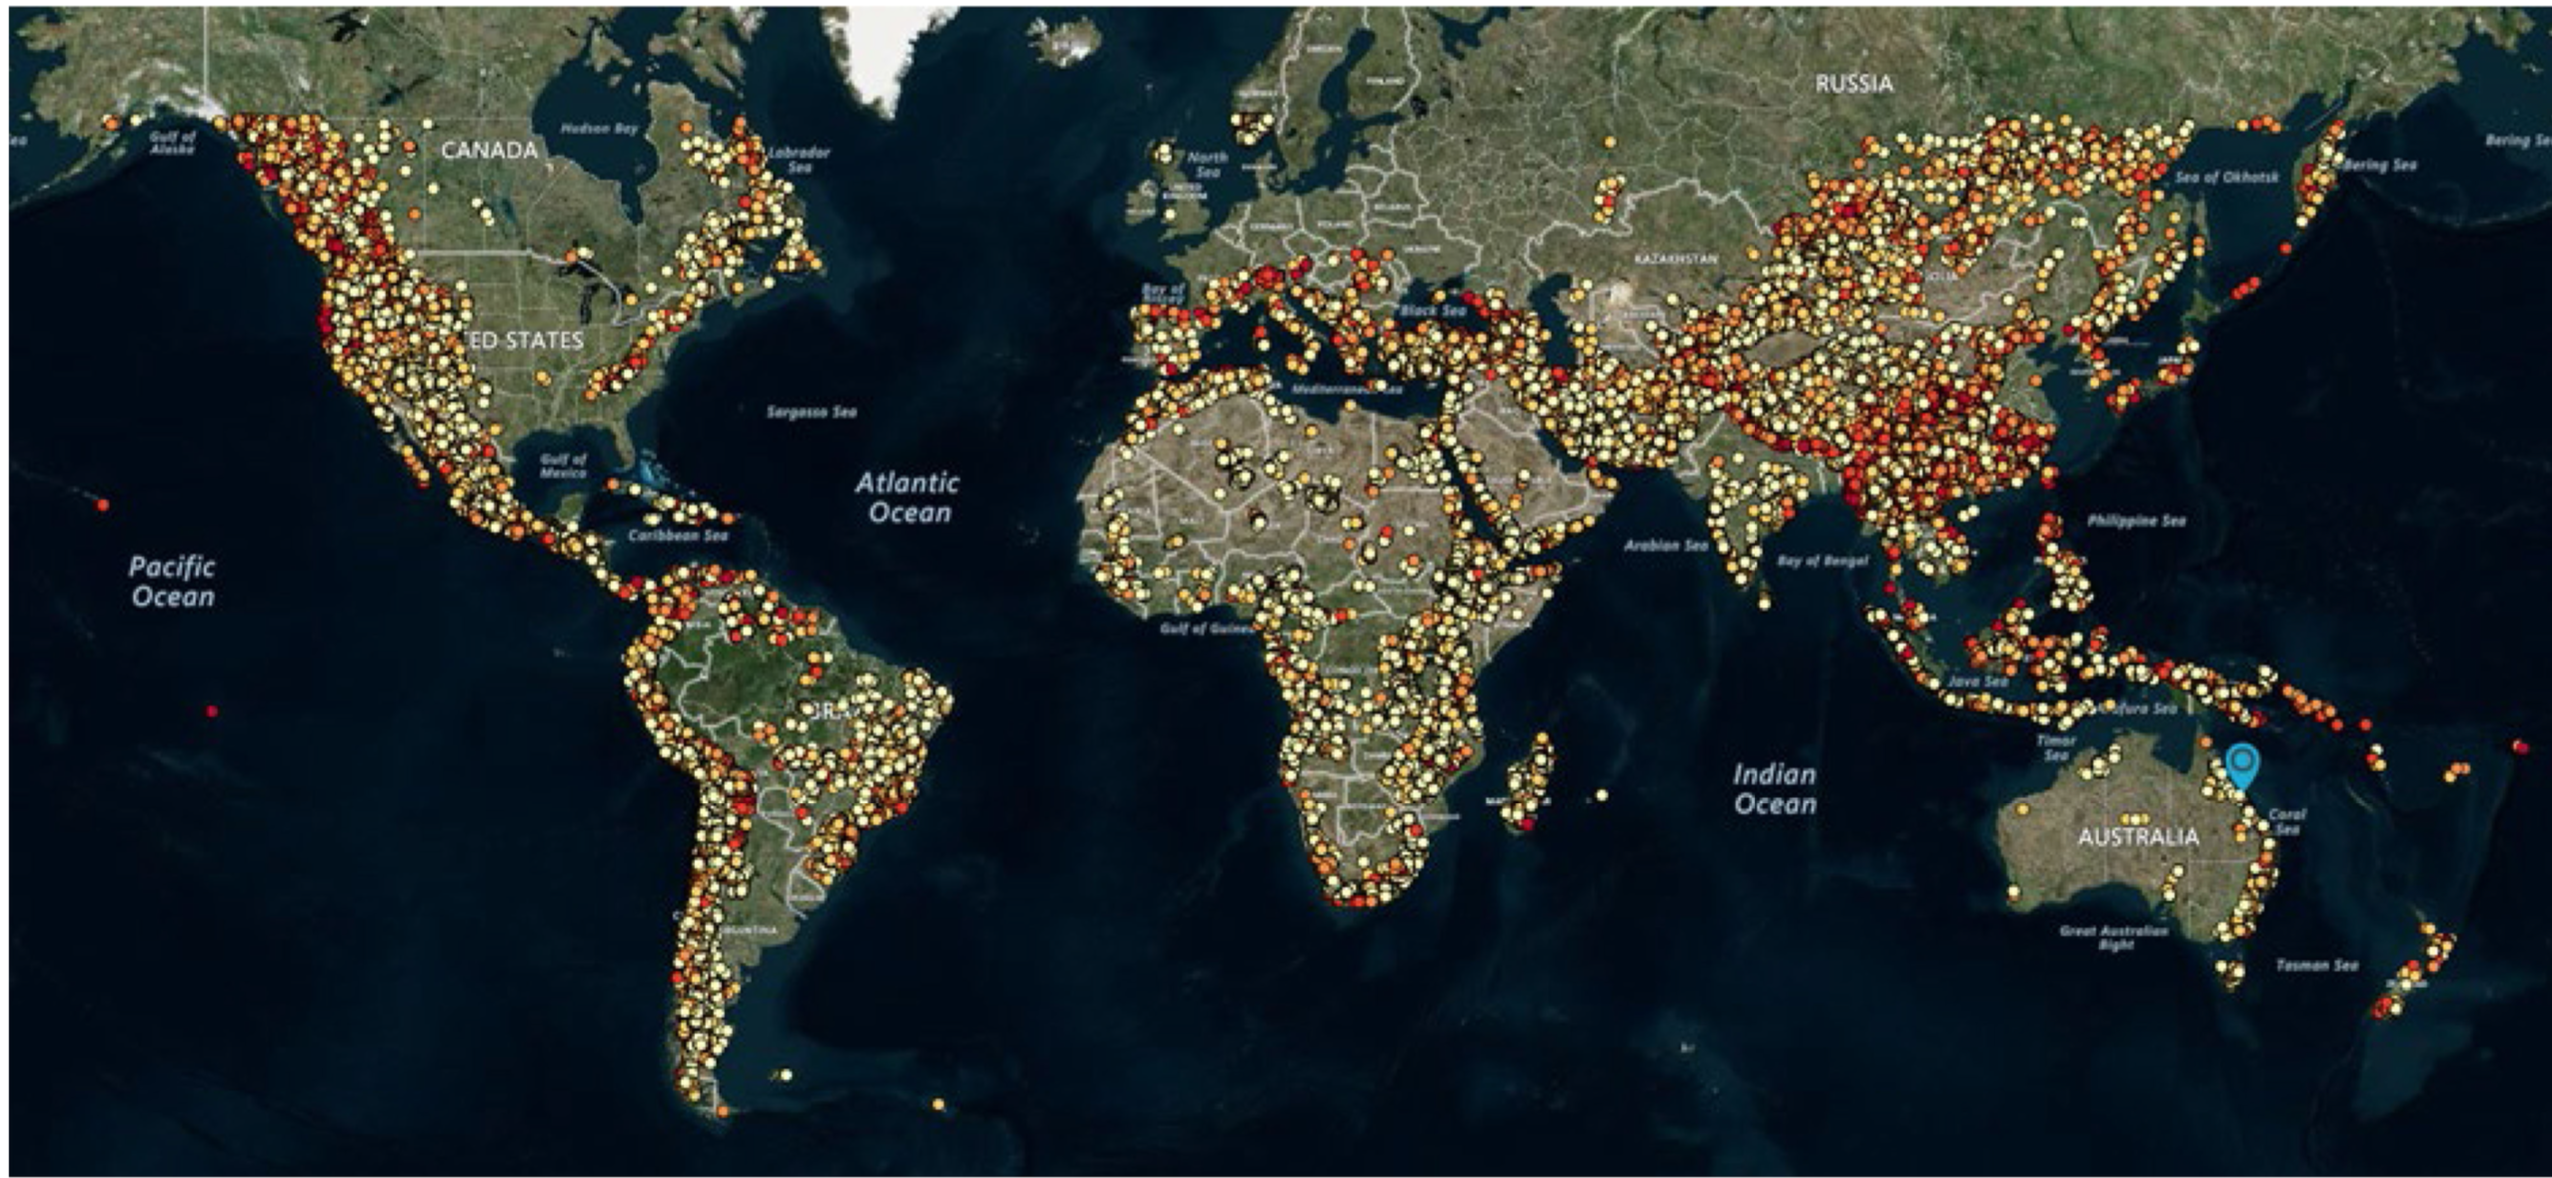 Global pumped hydro atlas released
